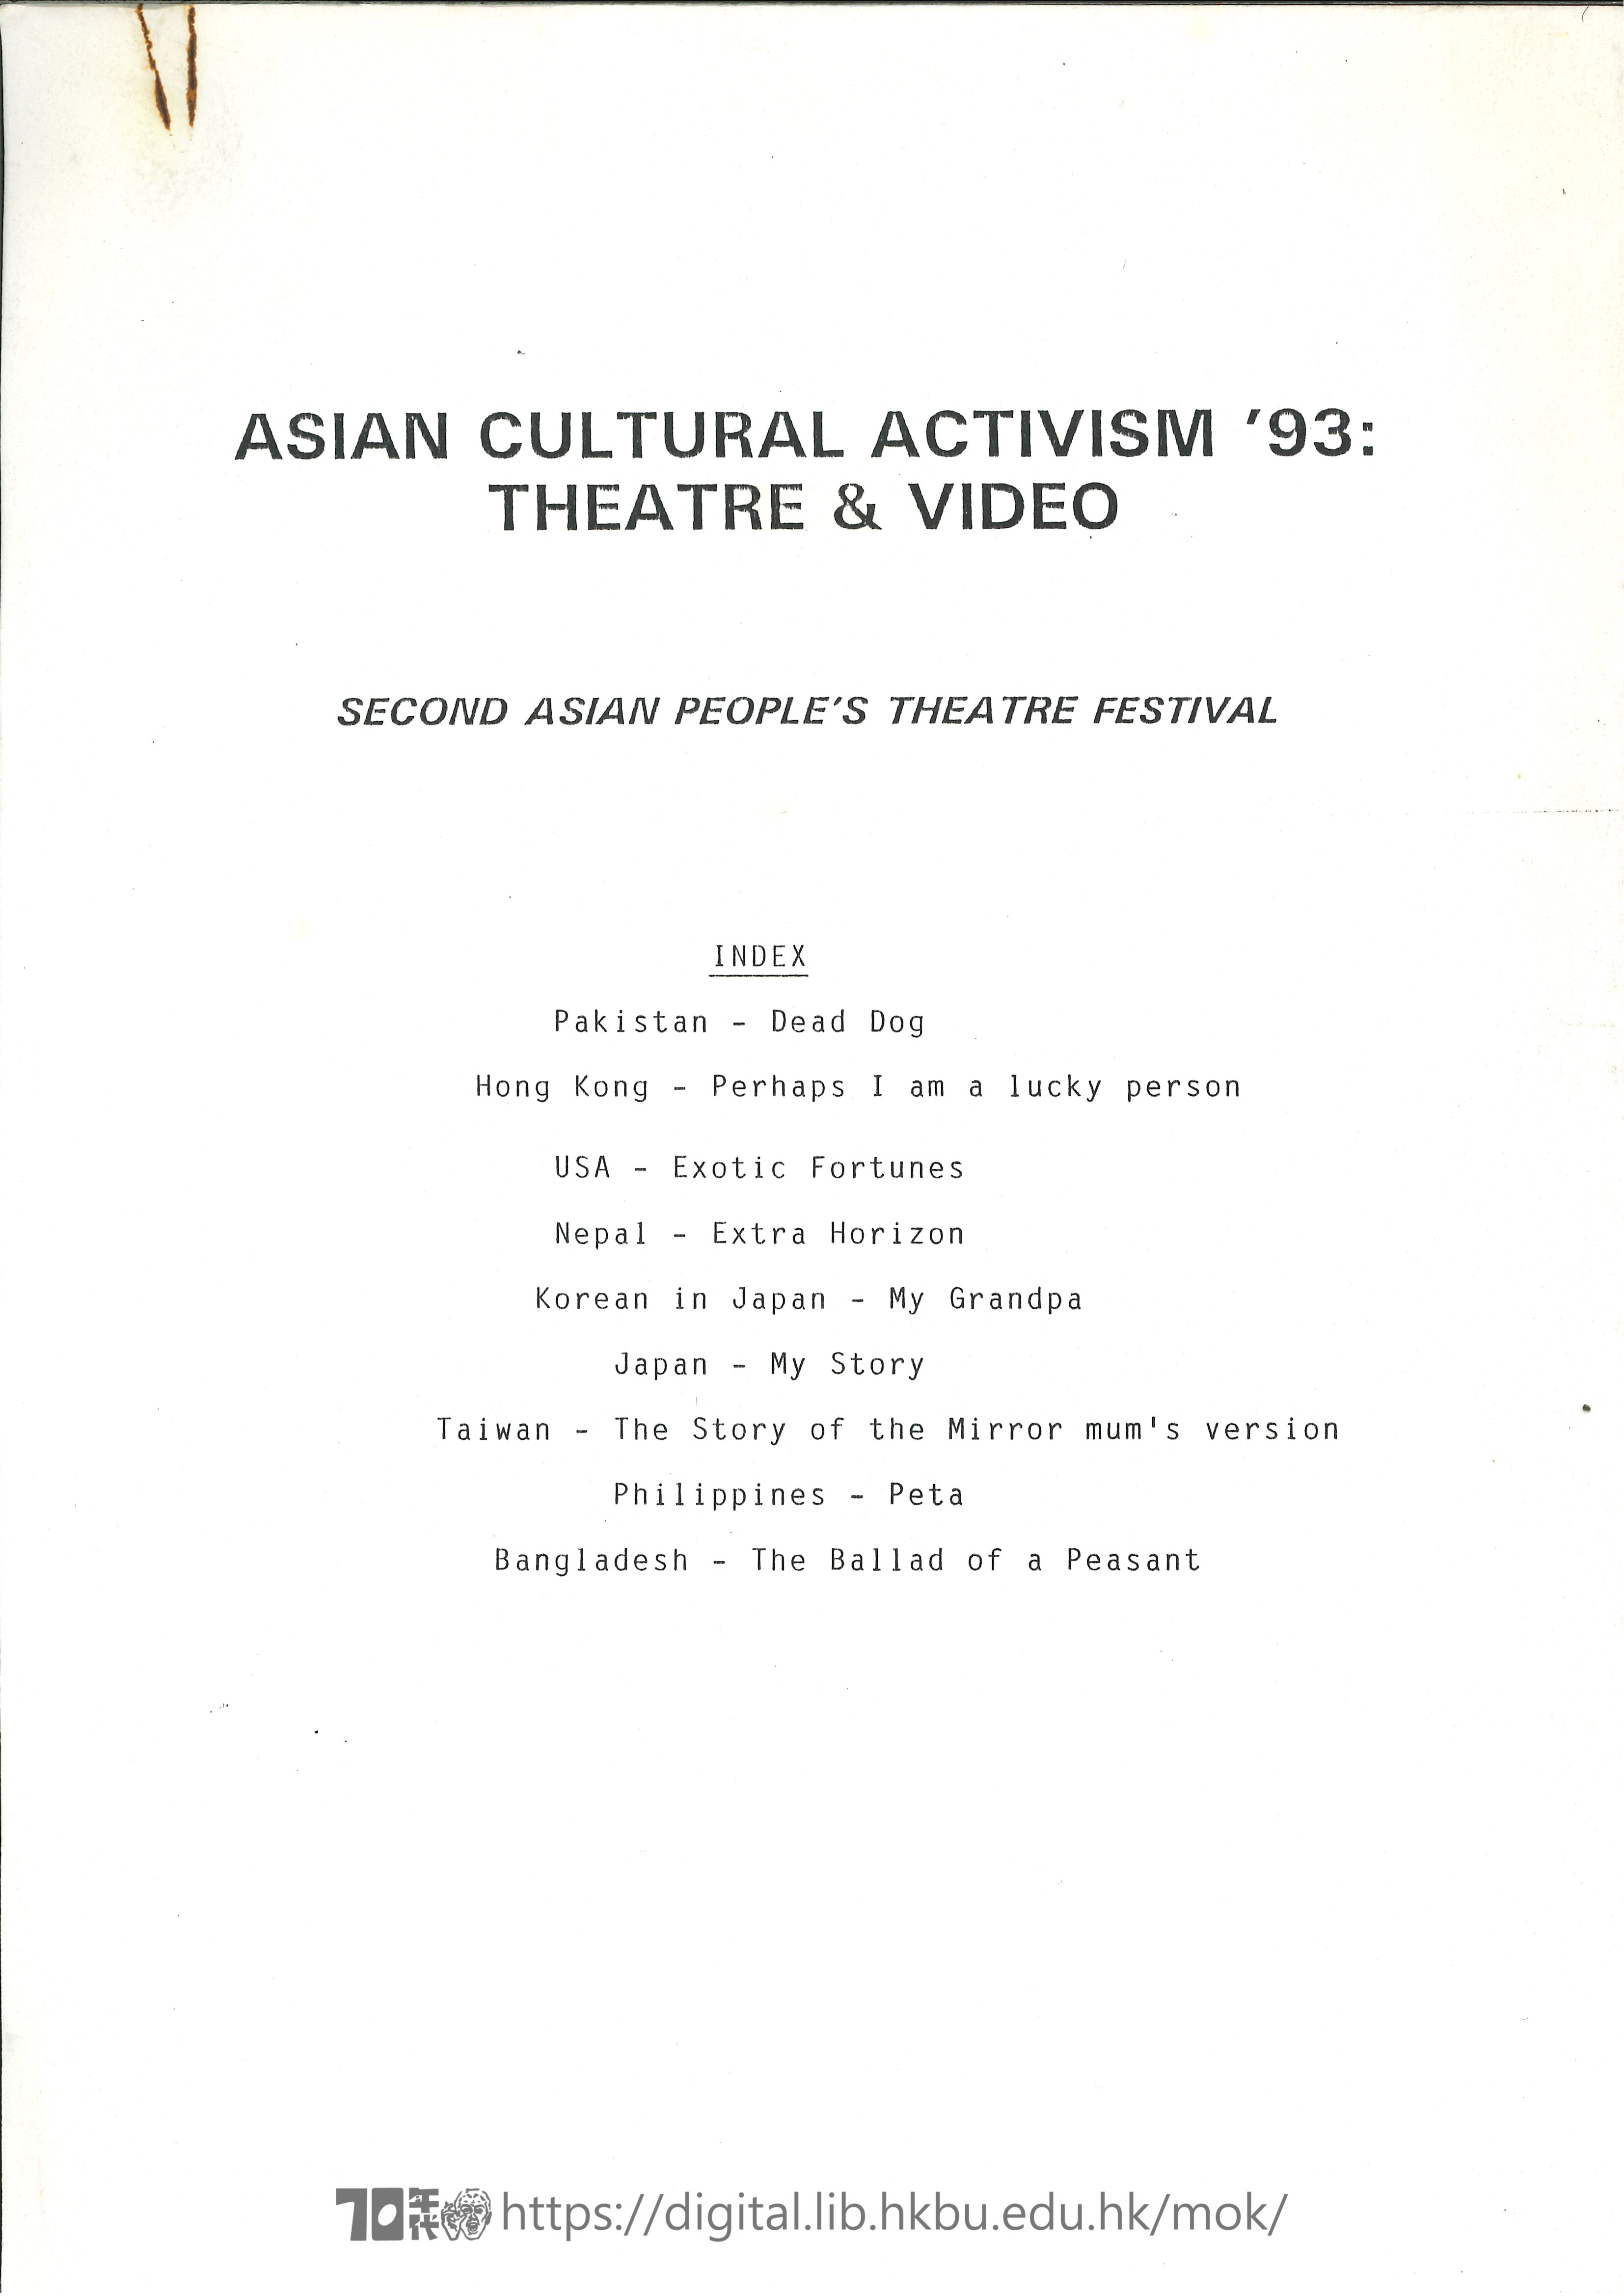 第二屆亞洲民眾戲劇節  亞洲文化行動 93 戲劇與錄像節目(第二届亞洲民衆戲劇節 )  